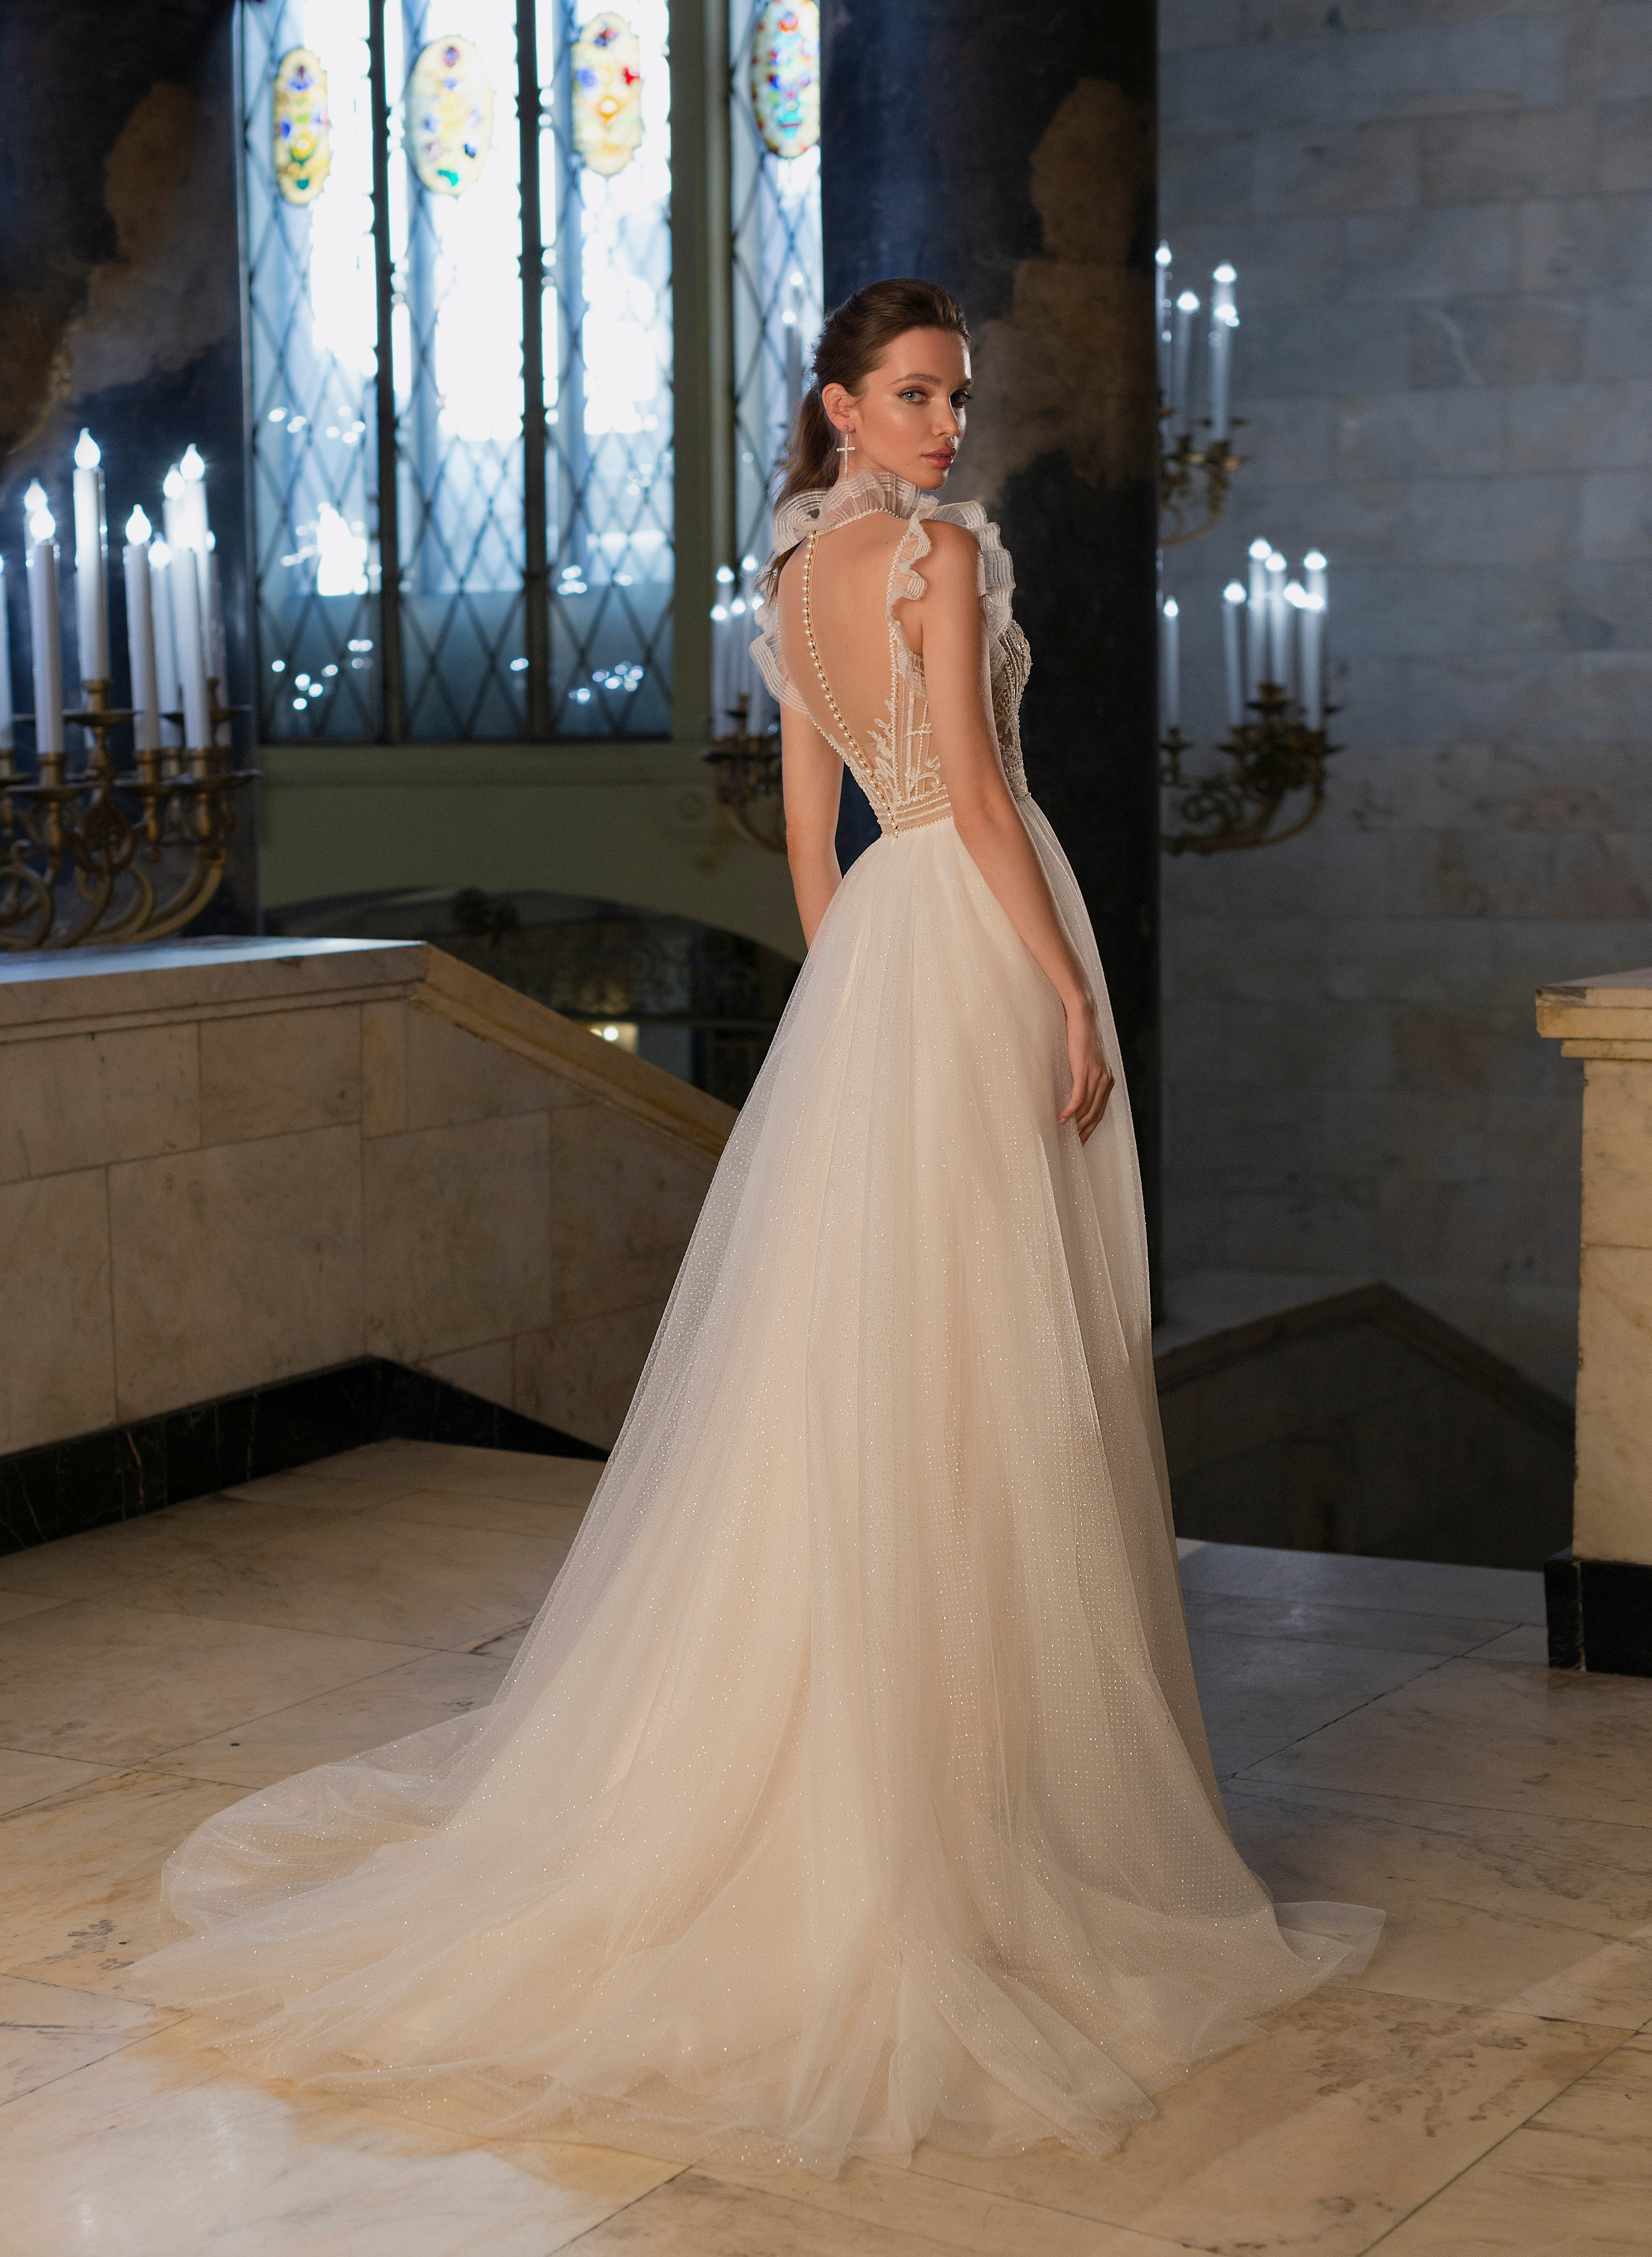 Купить свадебное платье «Талиса» Мэрри Марк из коллекции Бриллиант 2022 года в салоне «Мэри Трюфель»